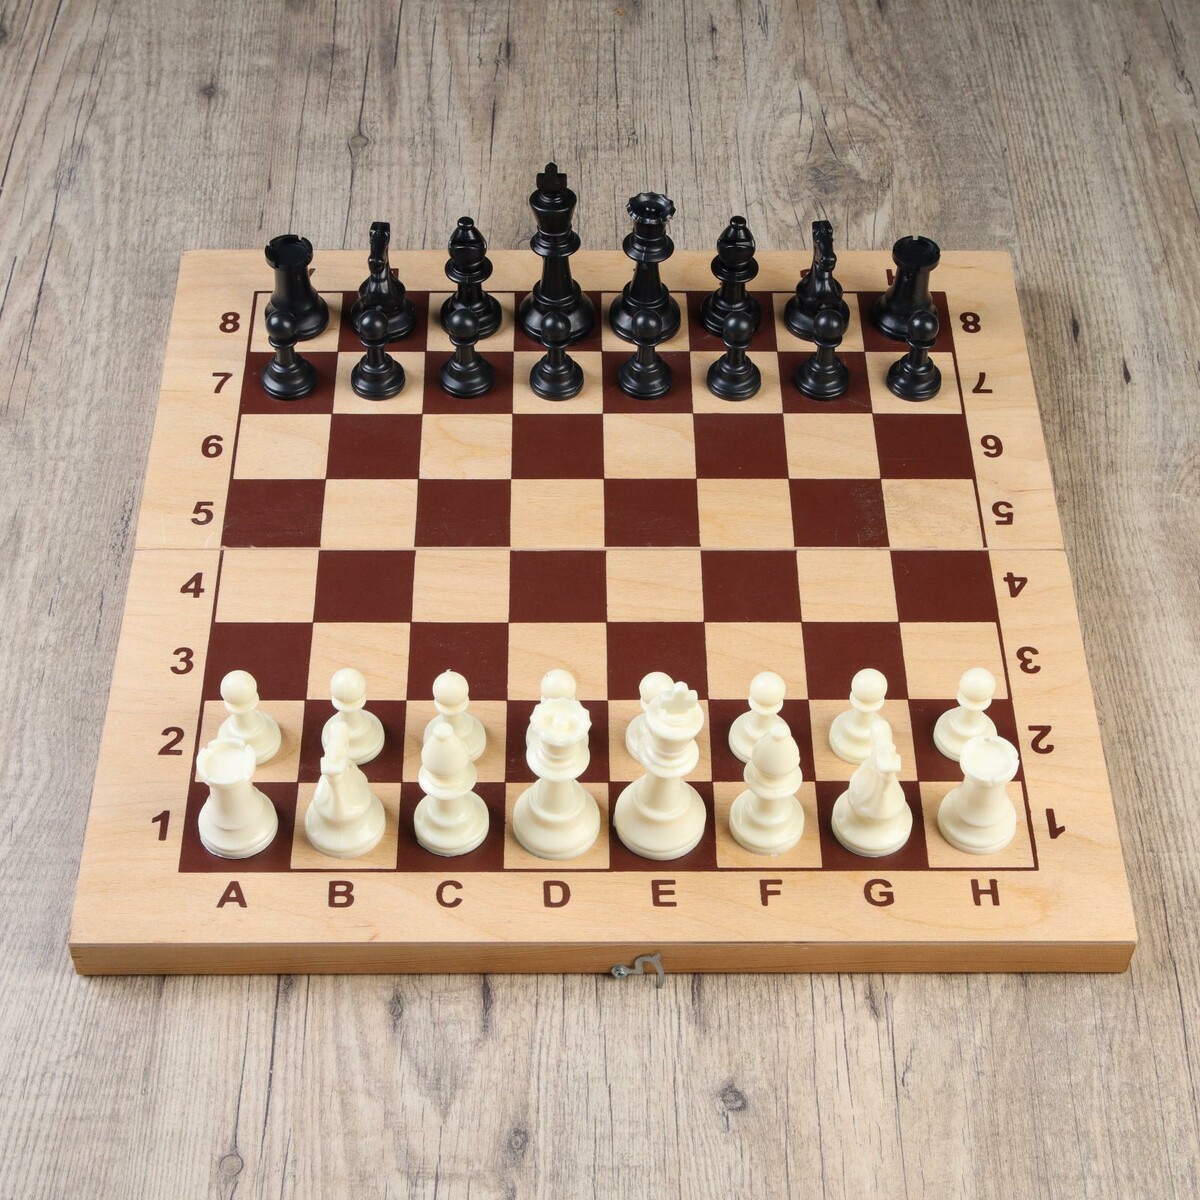 Шахматные фигуры, пластик, король h-9.5 см, пешка h-4.5 см стрекоза король и драконы